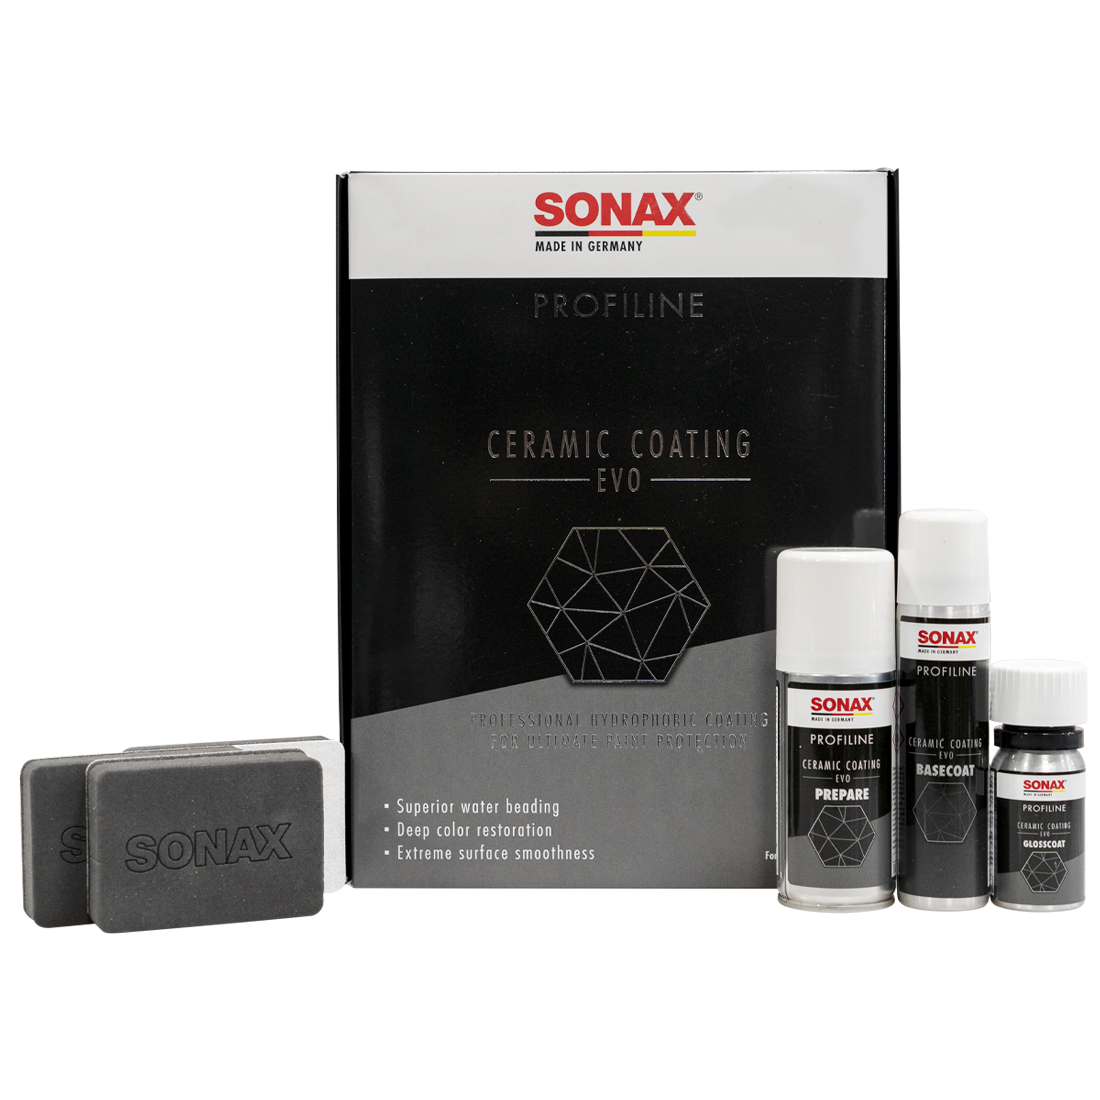 SONAX PROFILINE Ceramic Coating CC Evo